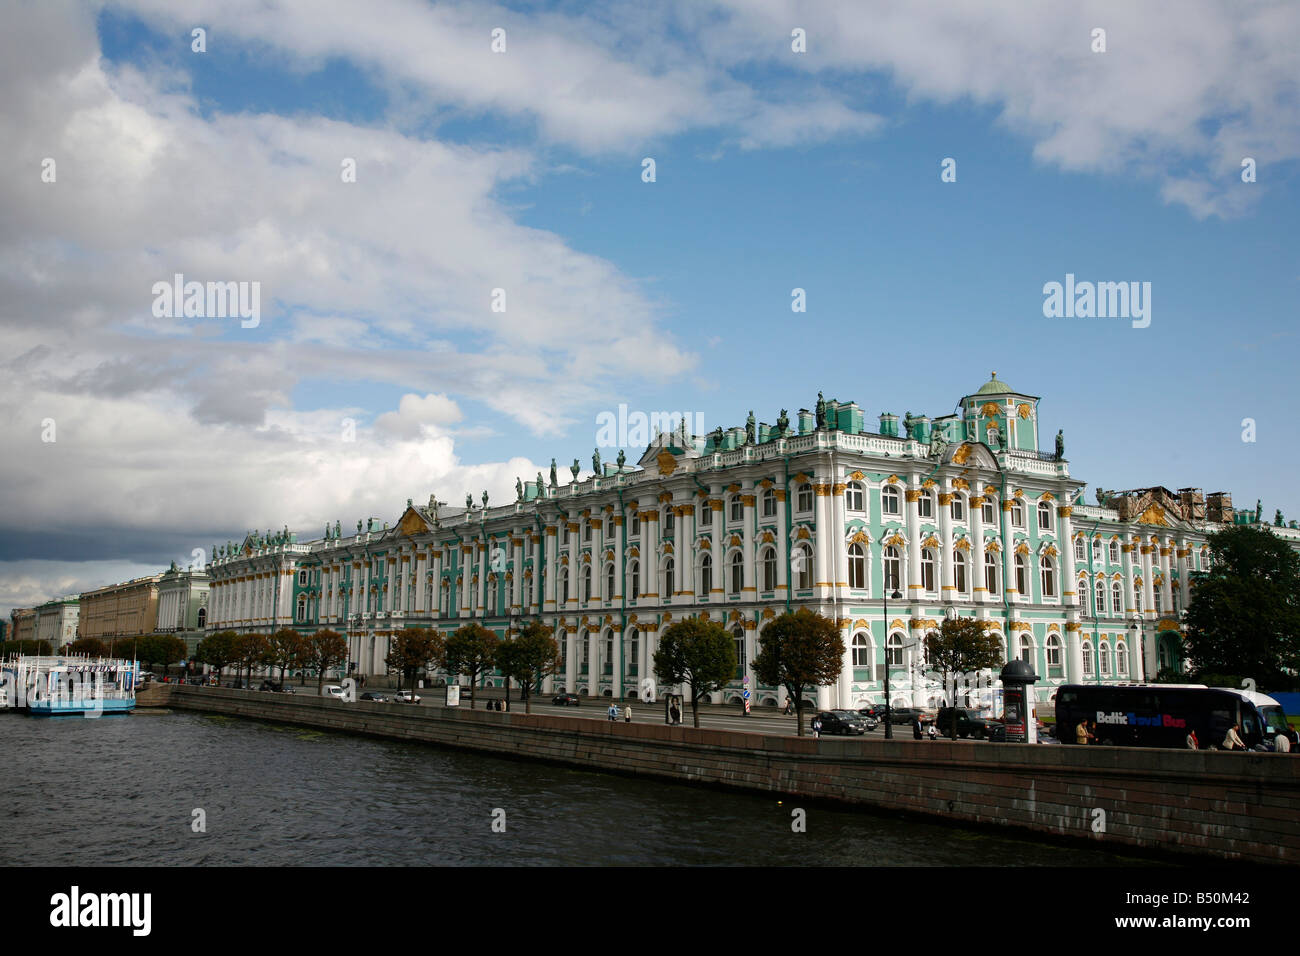 Agosto 2008 - El Palacio de Invierno de San Petersburgo, Rusia Foto de stock